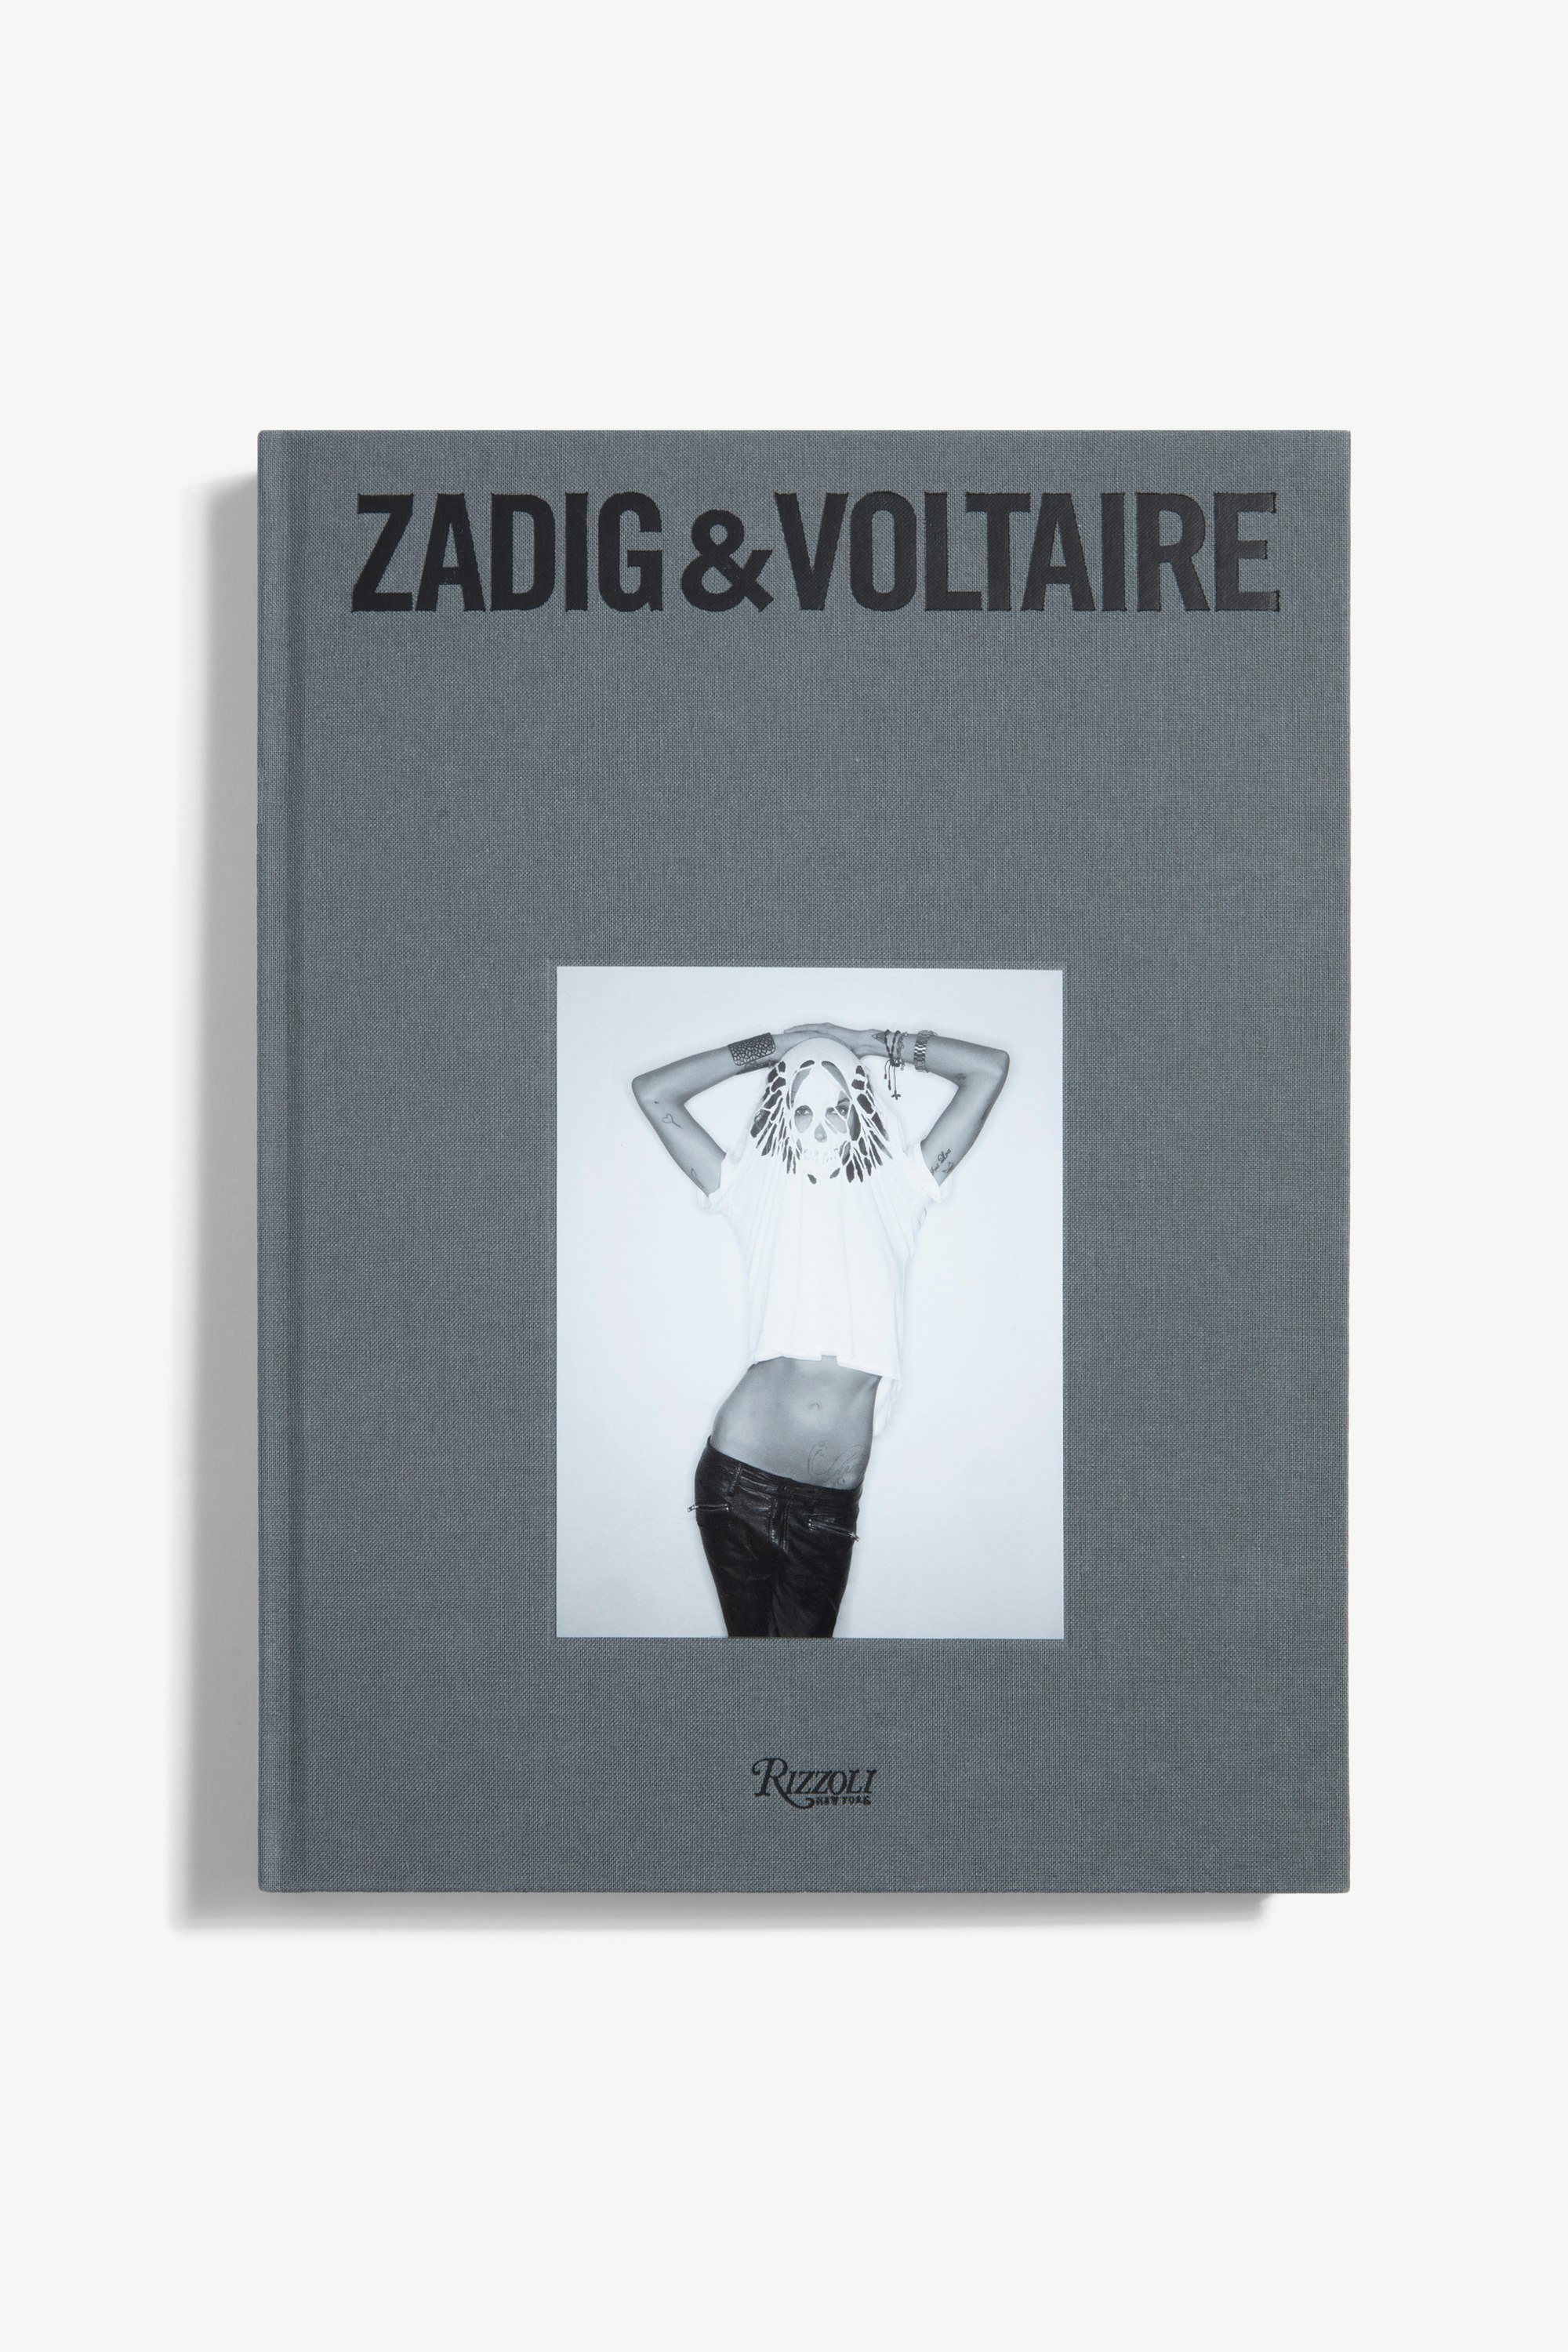 Libro "Zadig&Voltaire: Established 1997 in Paris" - Versione Francese - La prima monografia sul marchio Zadig&Voltaire pubblicata in occasione del suo 25° anniversario - Versione francese.